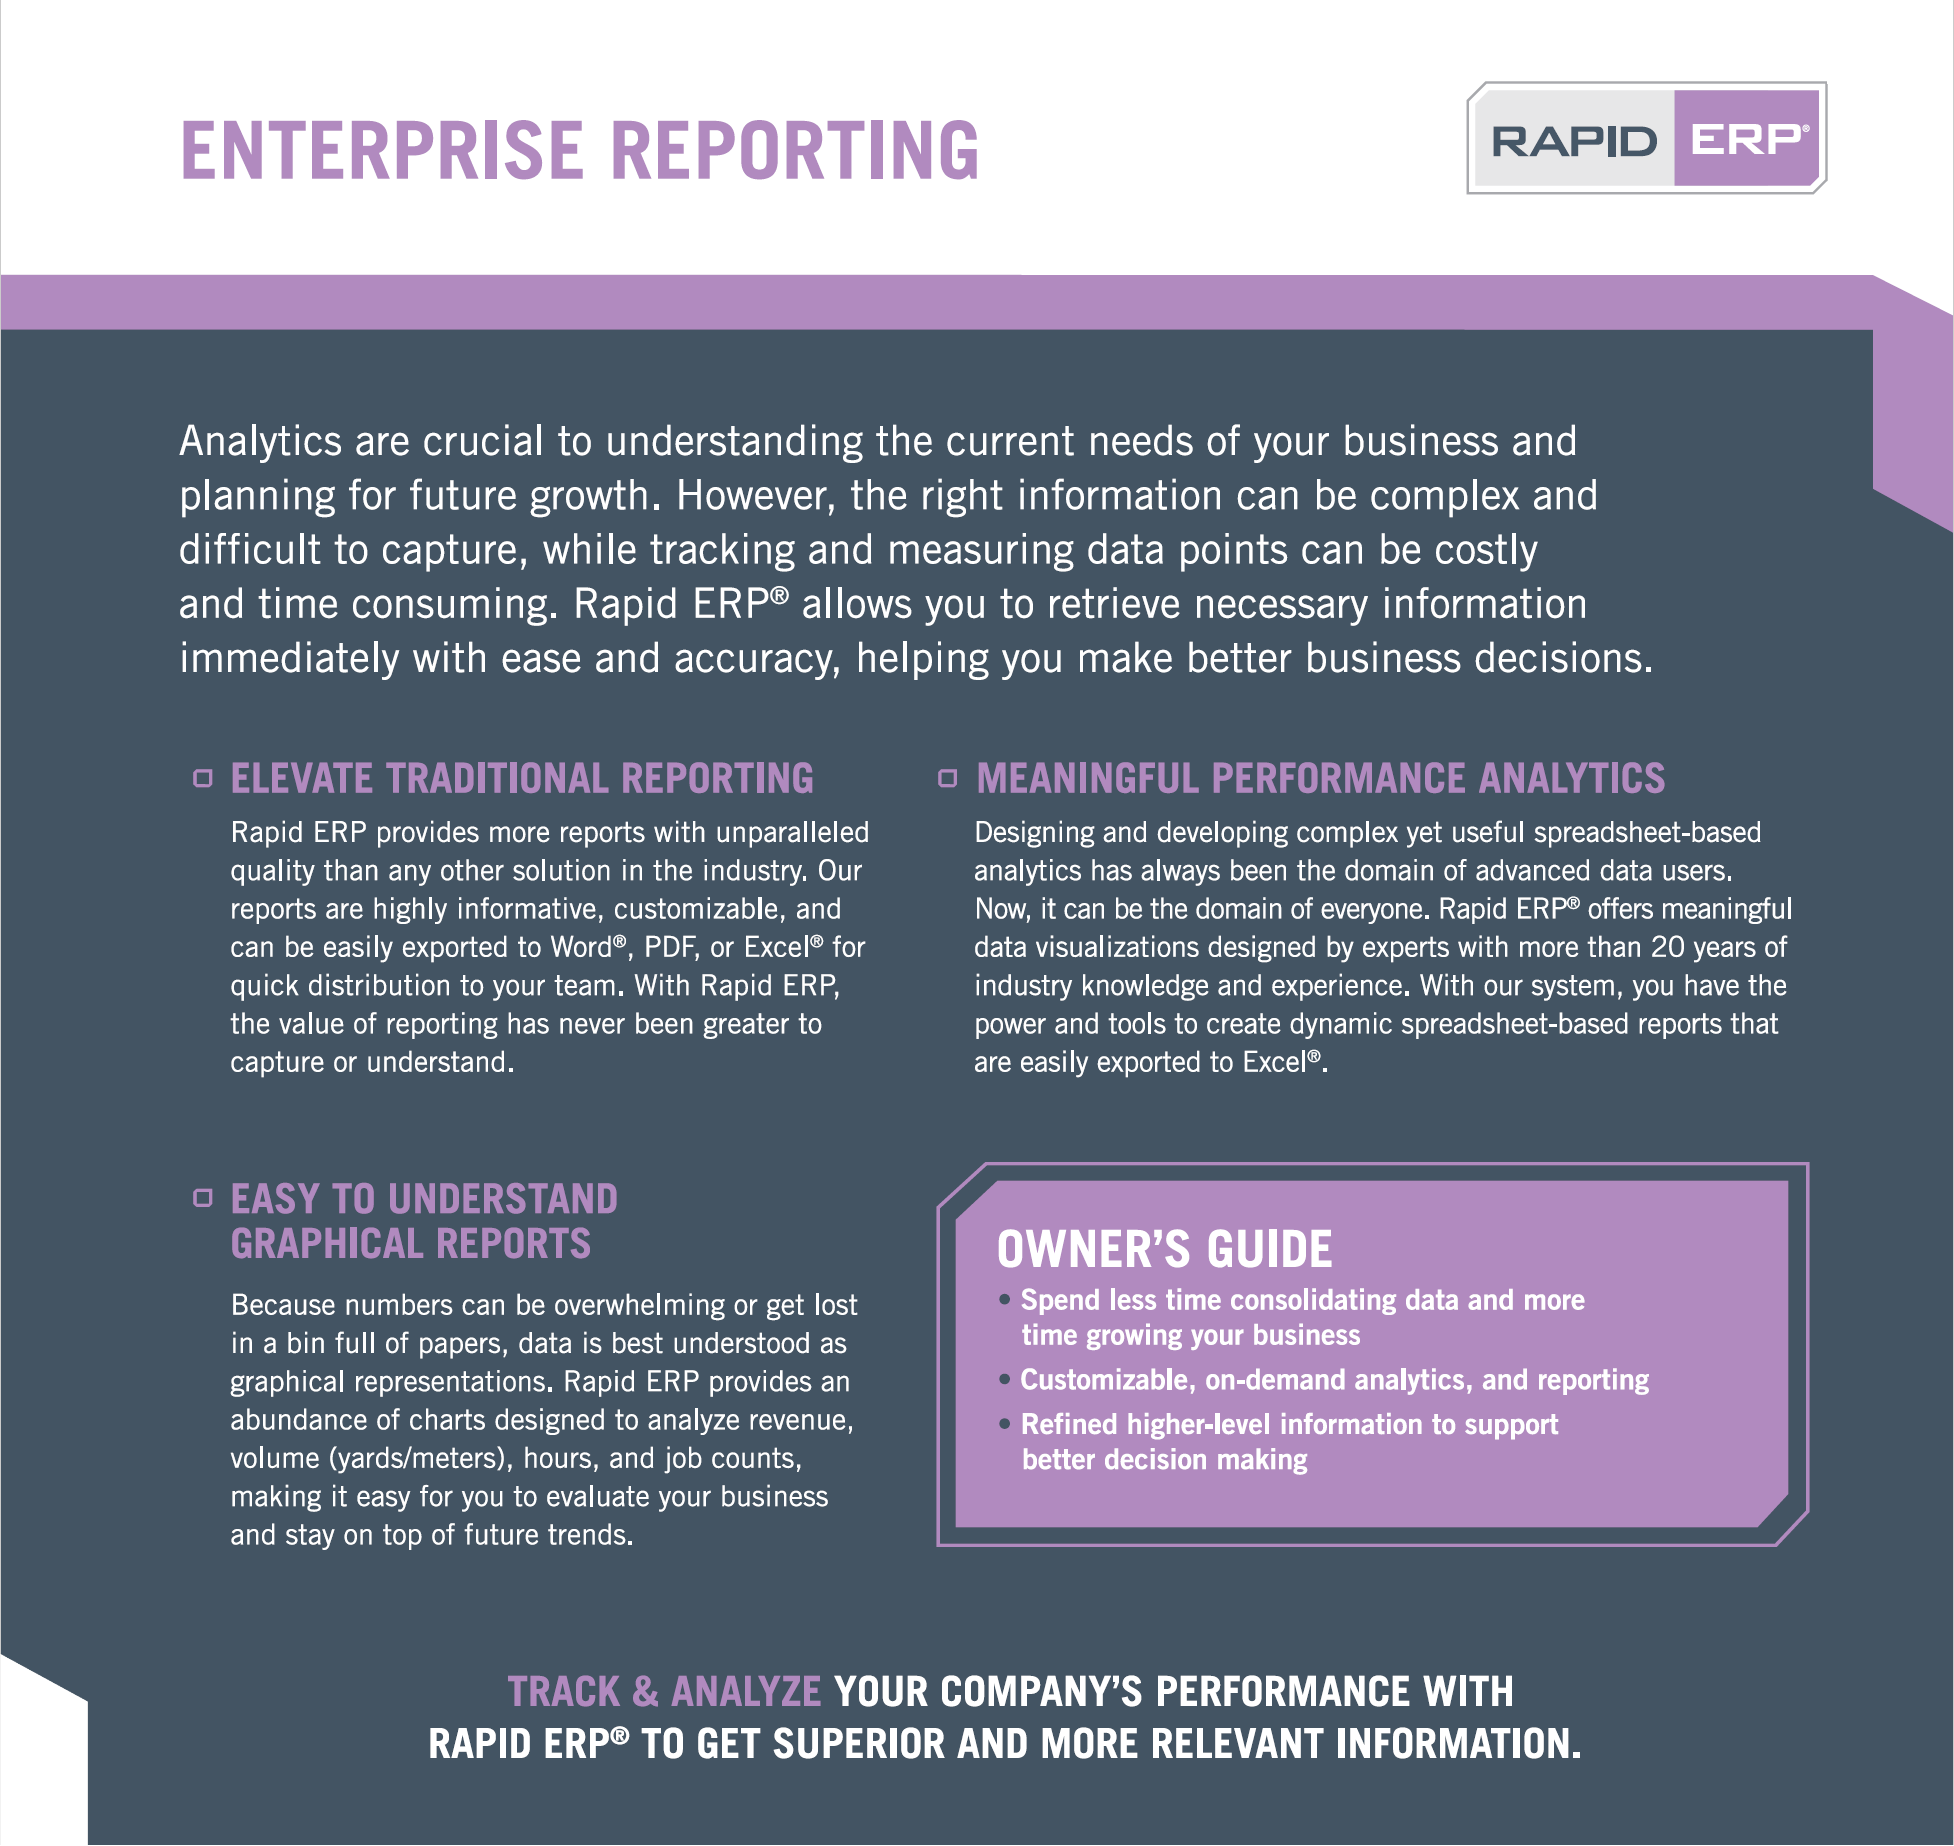 Rapid ERP - Enterprise Reporting